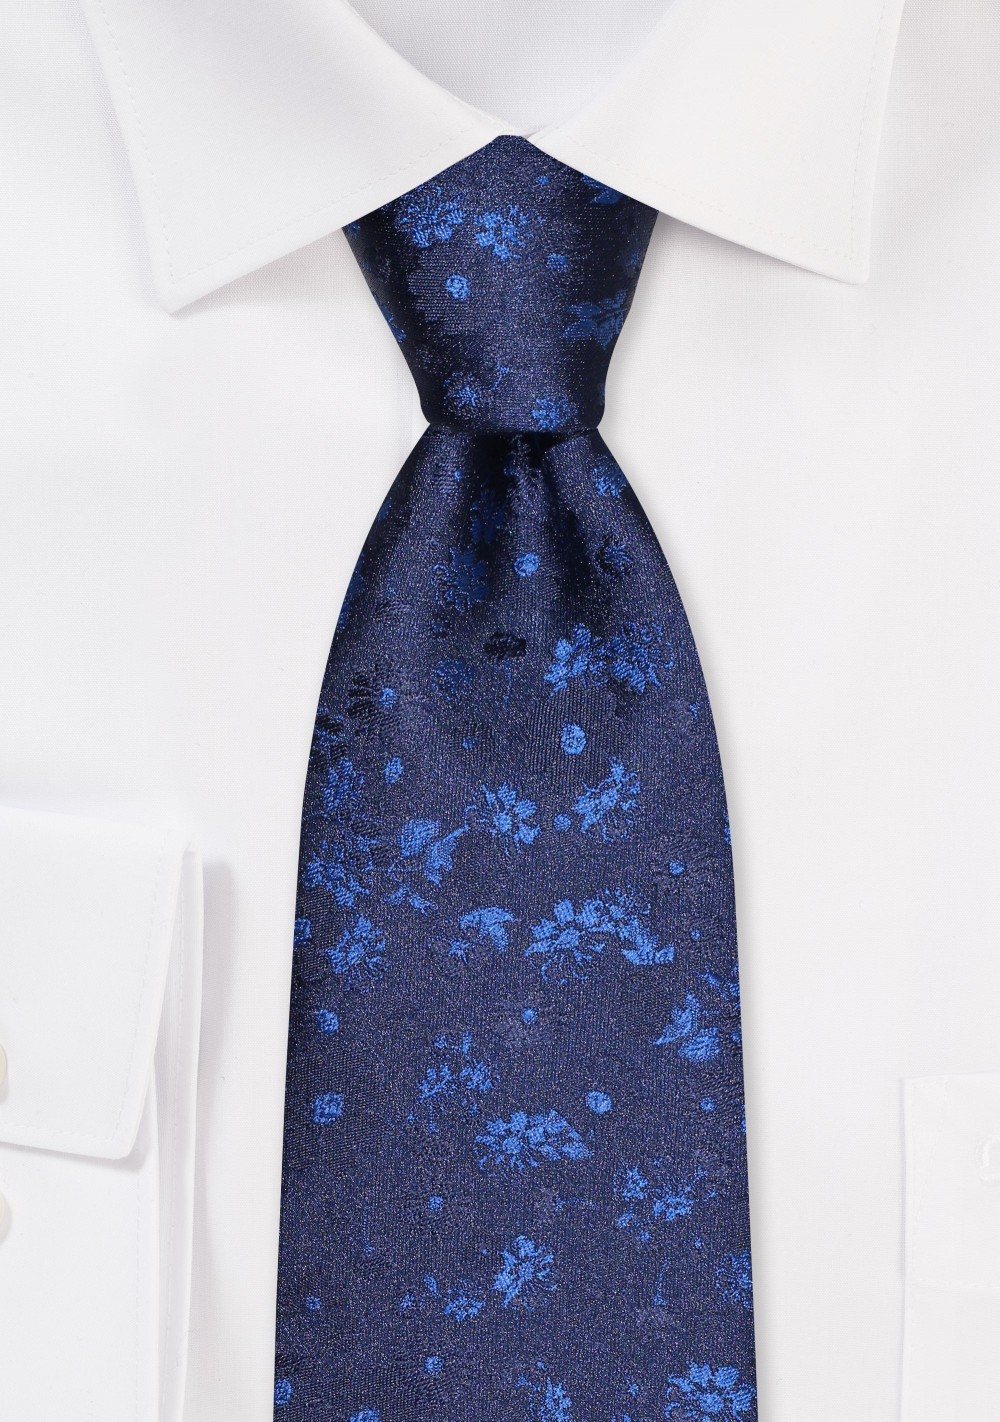 Navy Blue Floral Necktie